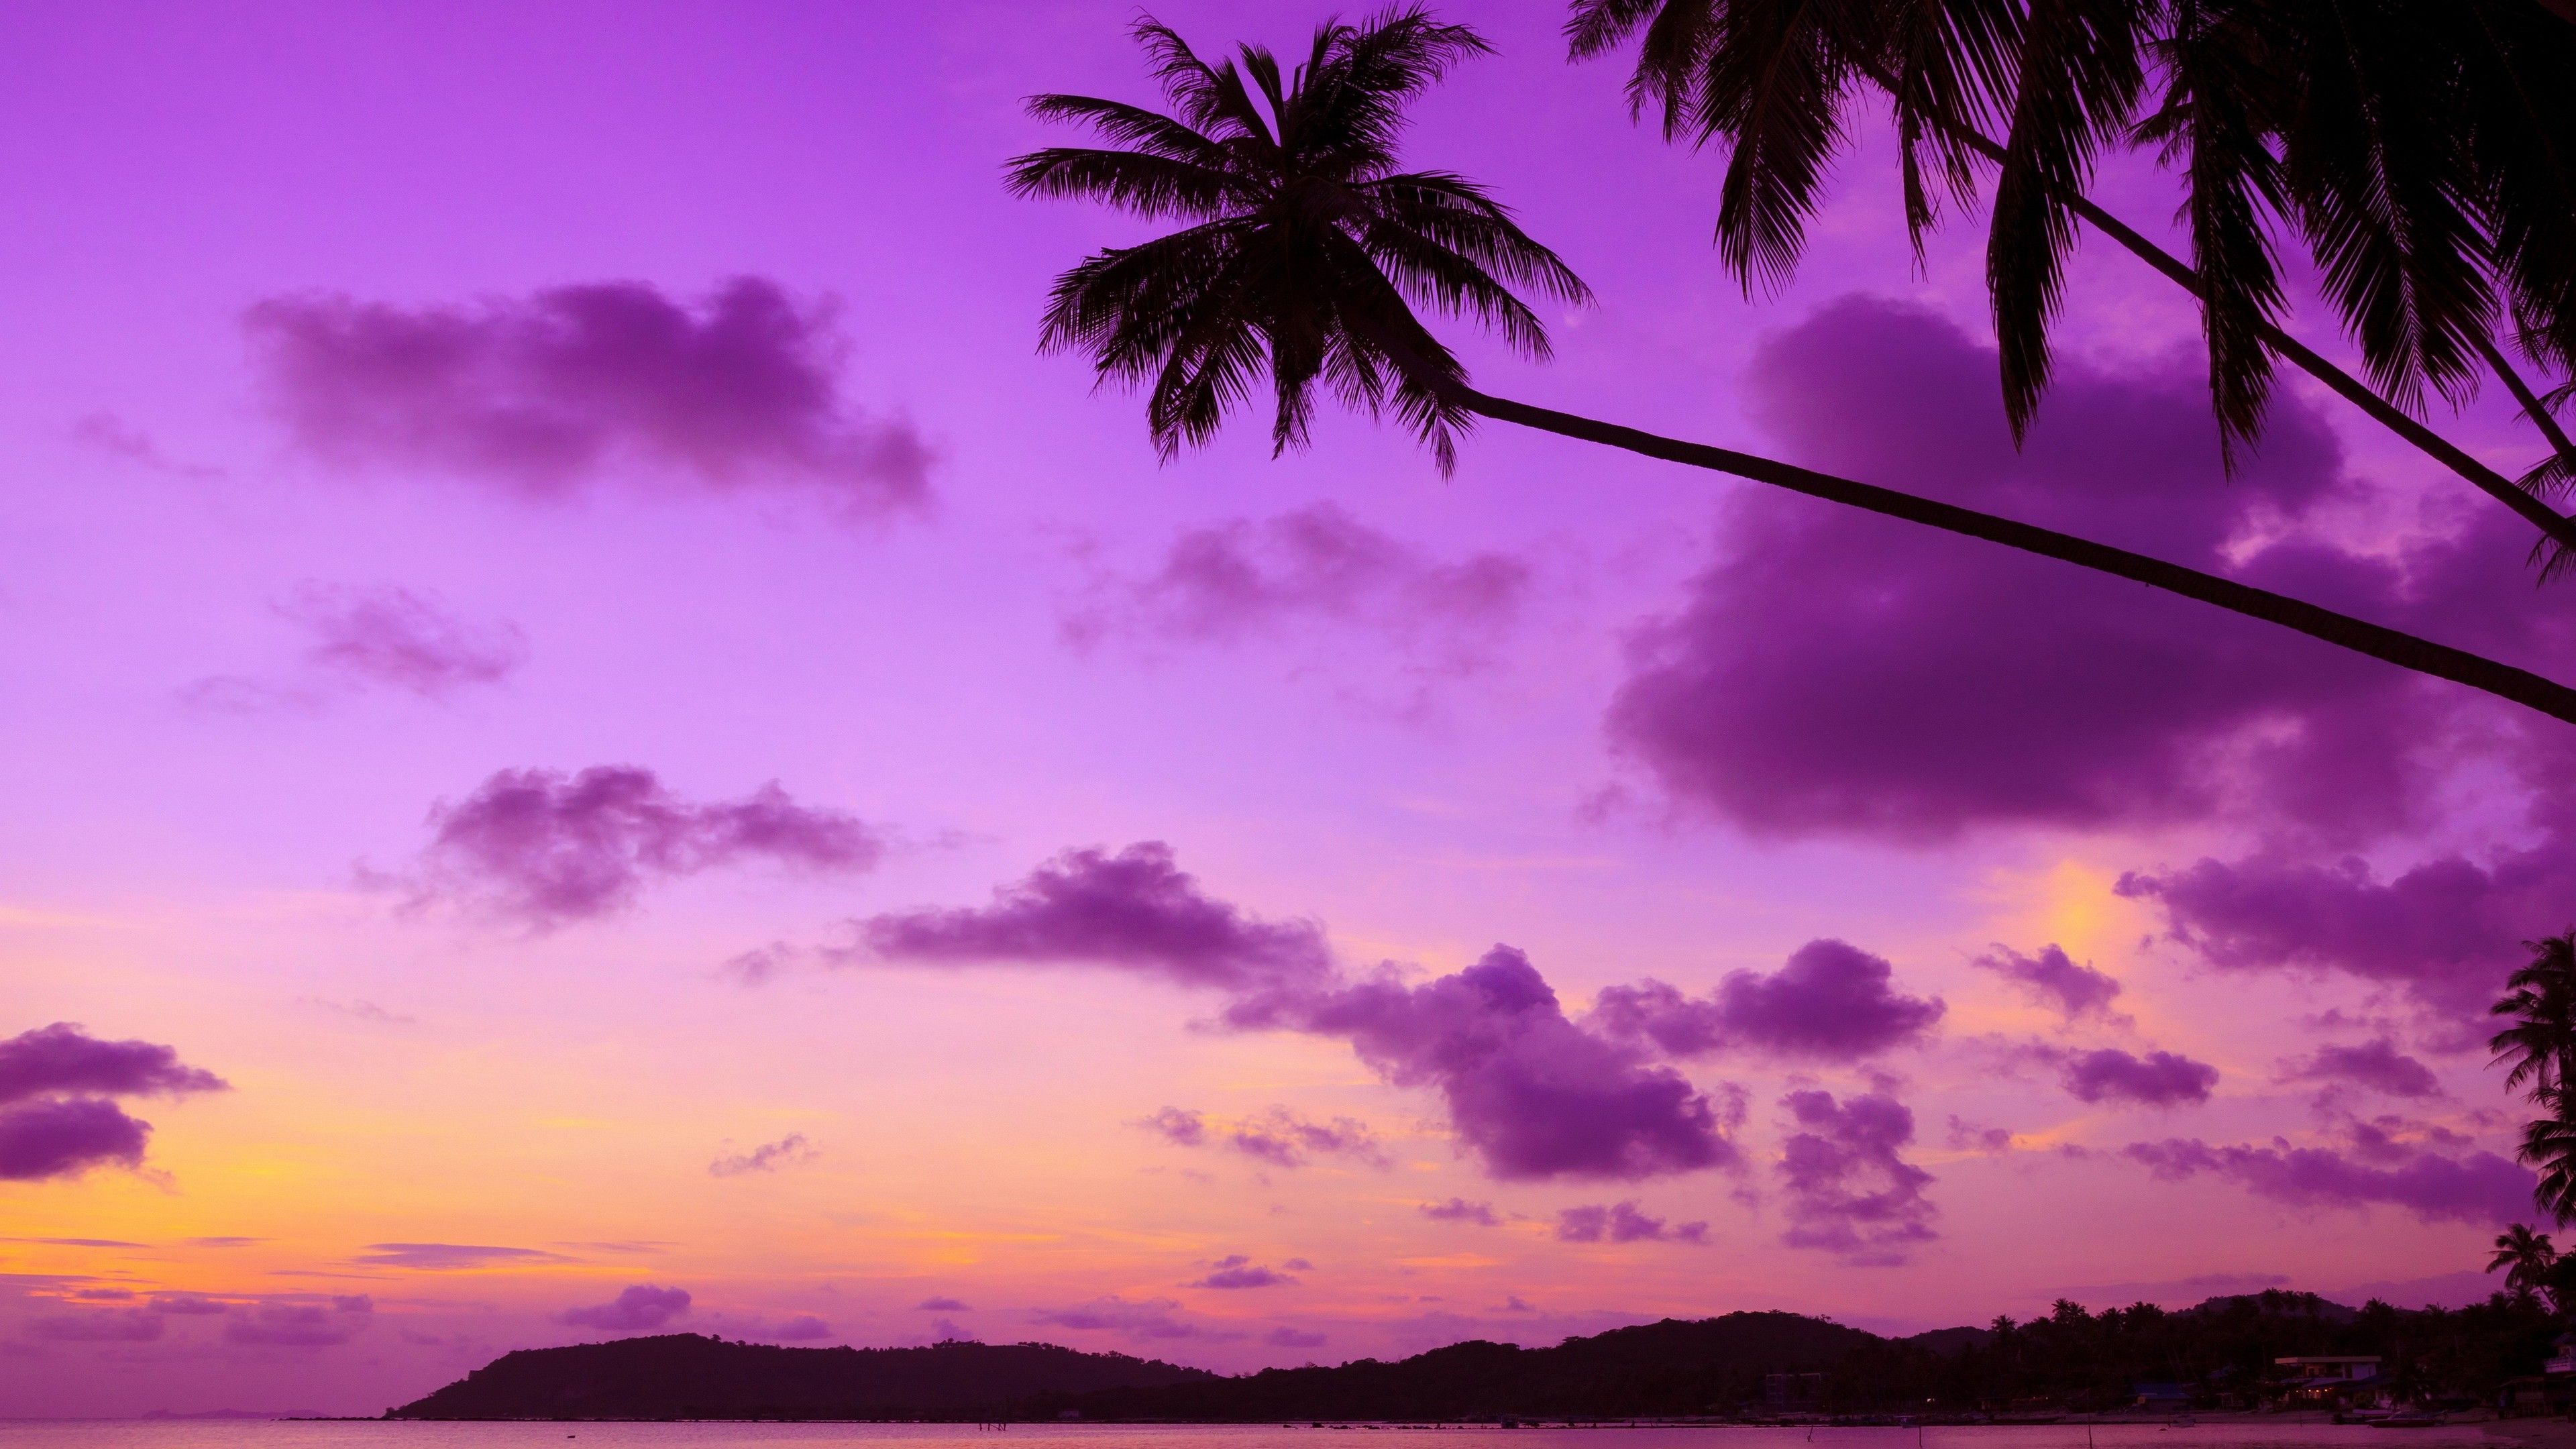 Purple Palm Tree 4k Trees Wallpaper, Purple Wallpaper, Palm Wallpaper, Nature Wallpaper, Hd Wallpaper. Purple Sky, Sunset, Purple Sunset